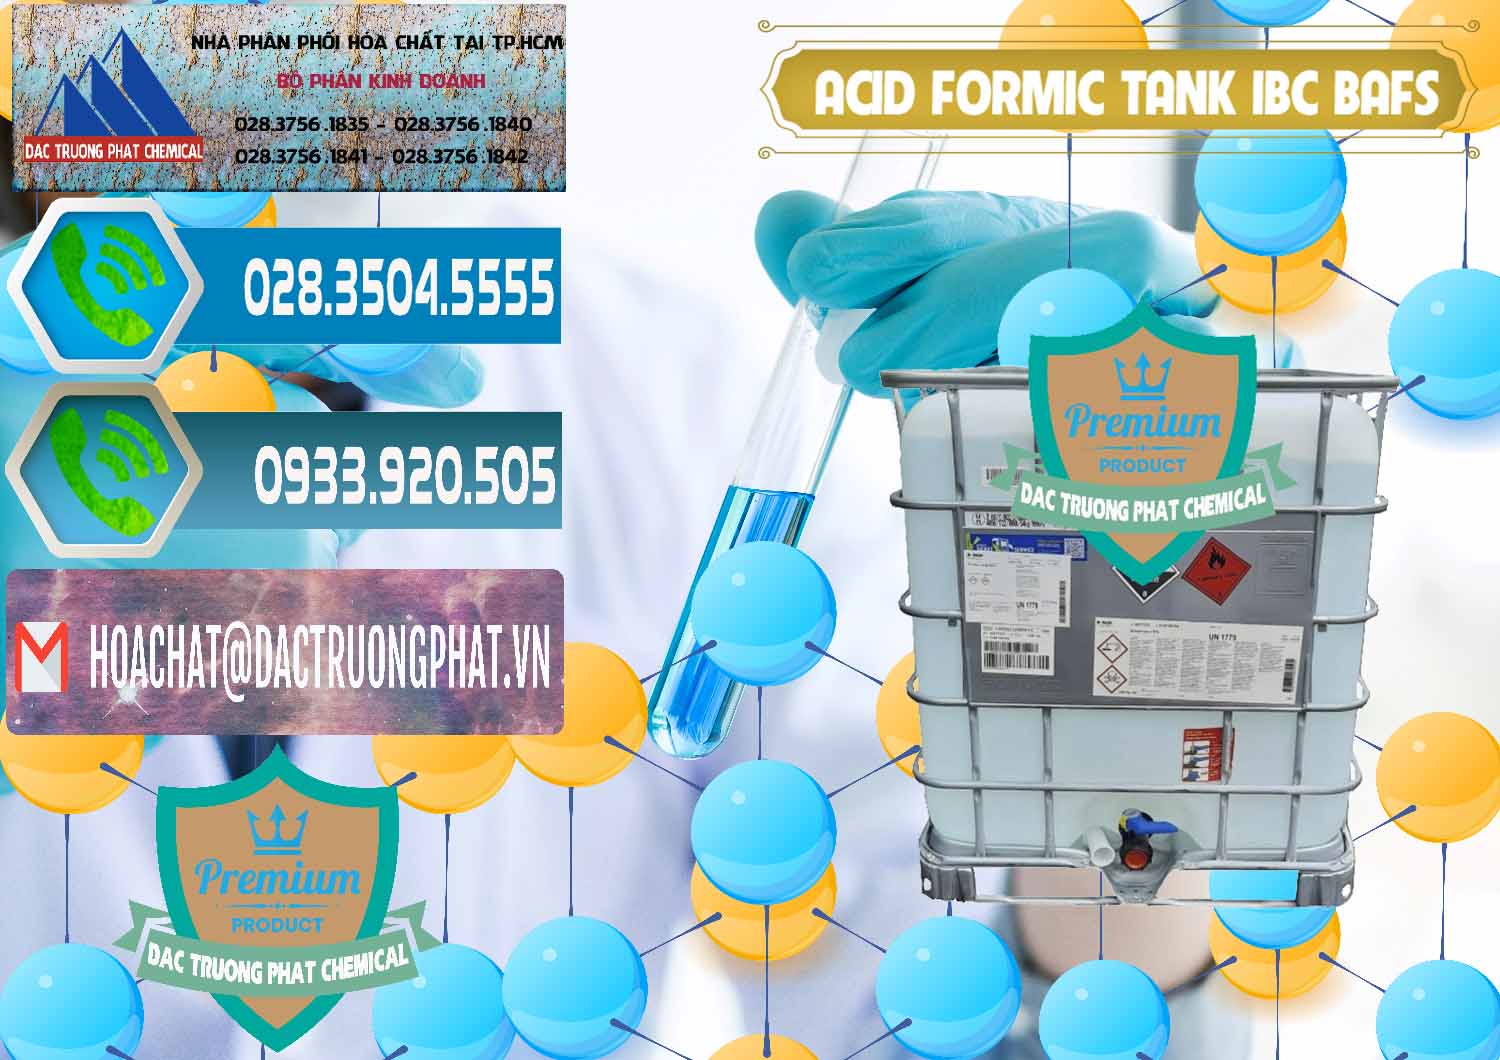 Kinh doanh ( bán ) Acid Formic - Axit Formic Tank - Bồn IBC BASF Đức - 0366 - Đơn vị cung ứng & phân phối hóa chất tại TP.HCM - congtyhoachat.net